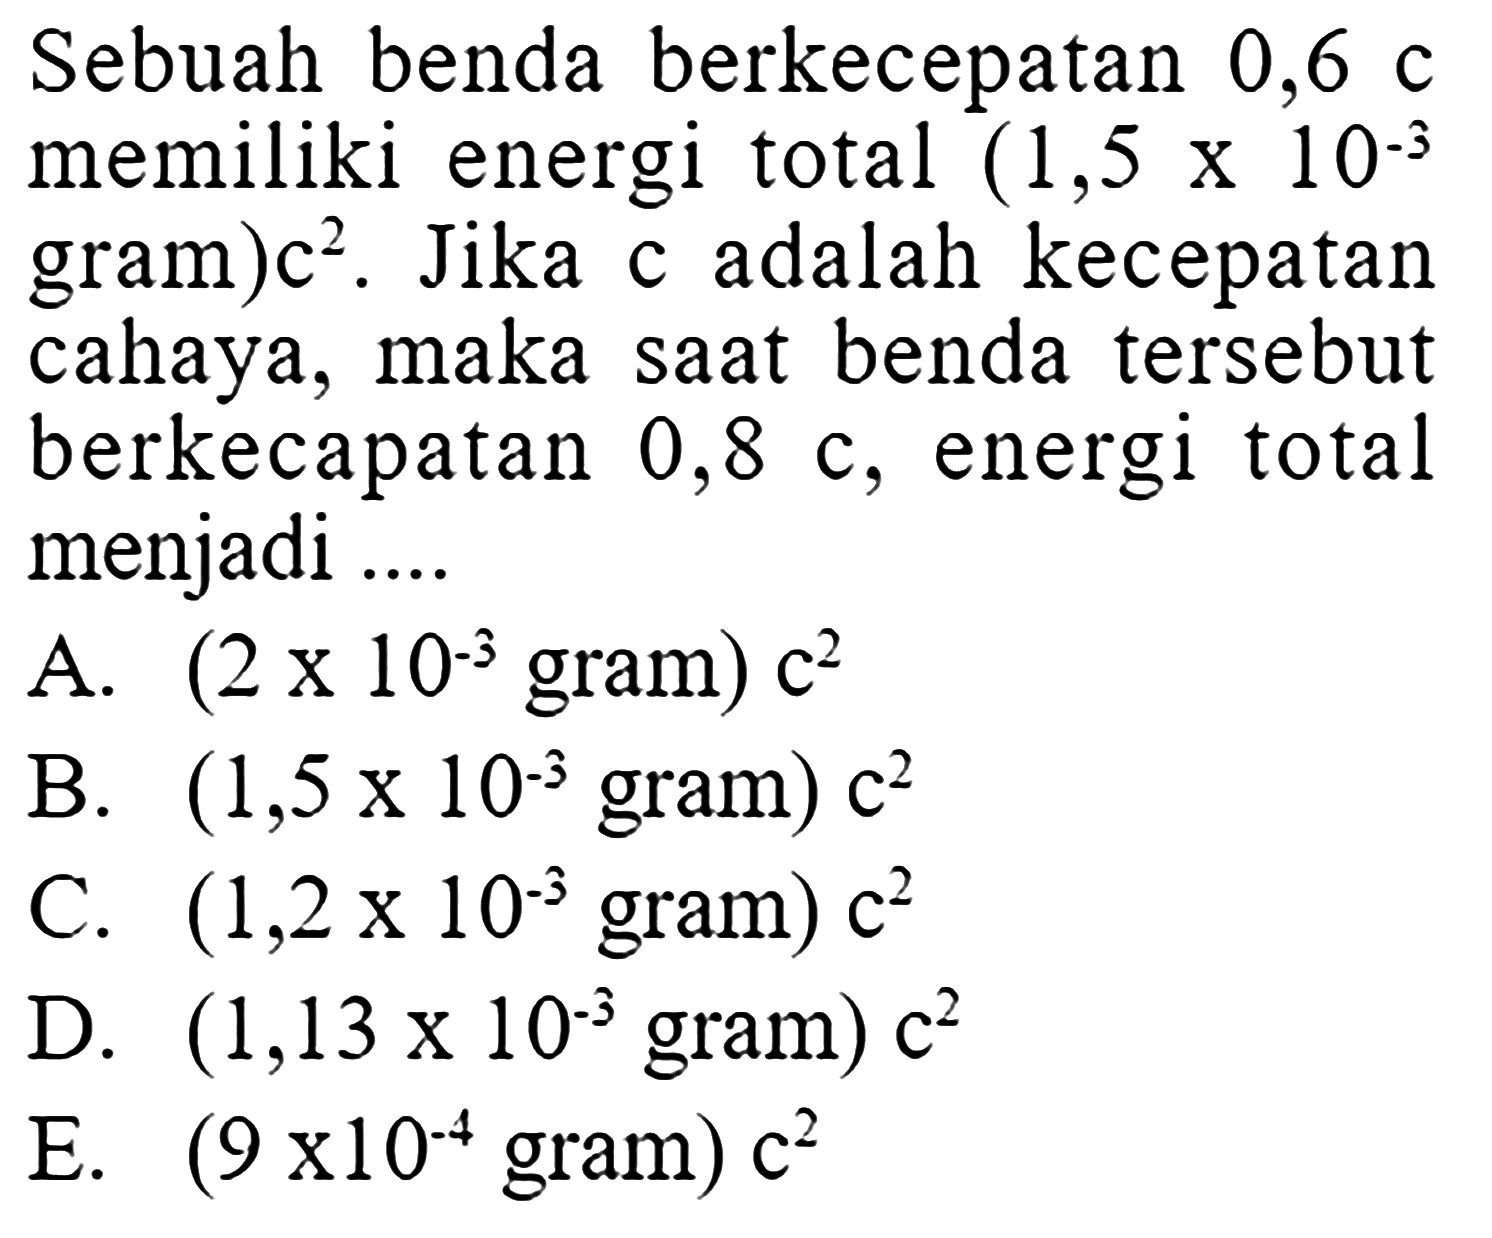 Sebuah benda berkecepatan 0,6 c memiliki energi total (1,5 x 10^(-3) gram)c^2. Jika c adalah kecepatan cahaya, maka saat benda tersebut berkecapatan  0,8 c , energi total menjadi .... 